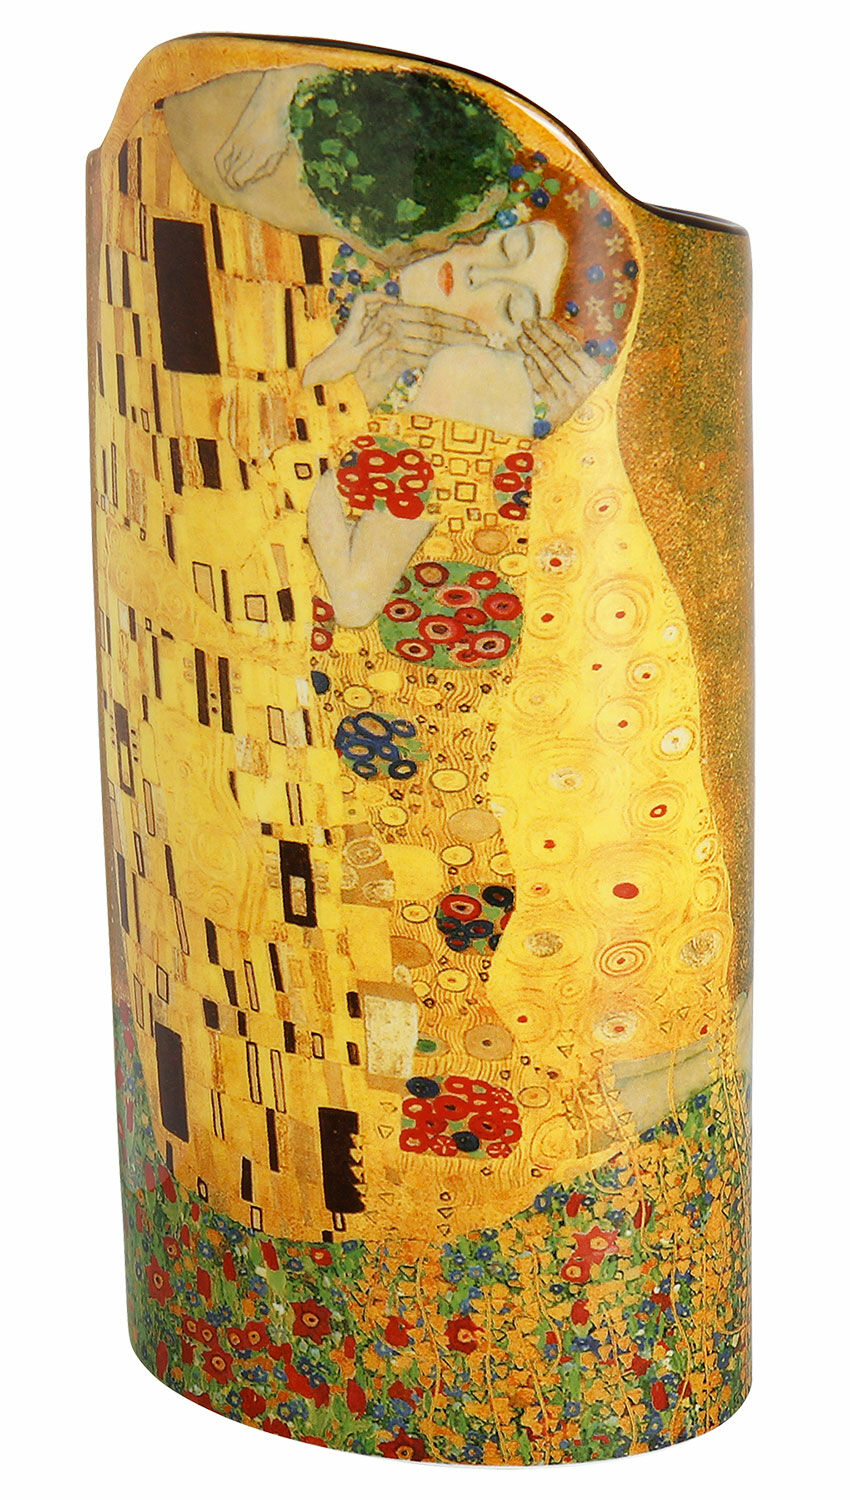 Porcelain vase "The Kiss" by Gustav Klimt